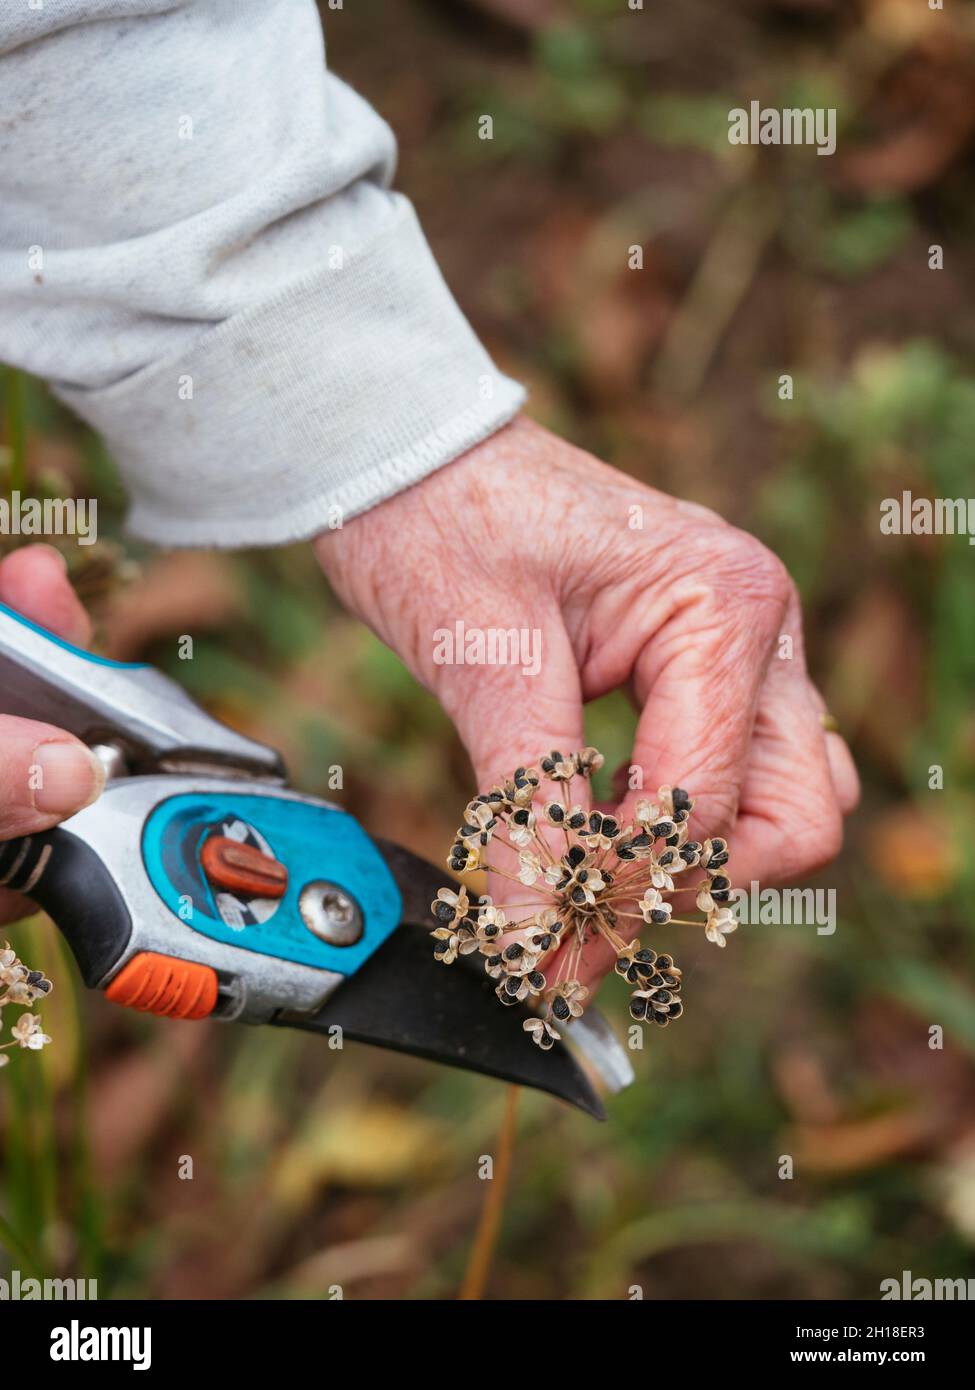 Jardinero recolectando semillas de cebolletas de ajo (Allium tuberosum). Foto de stock